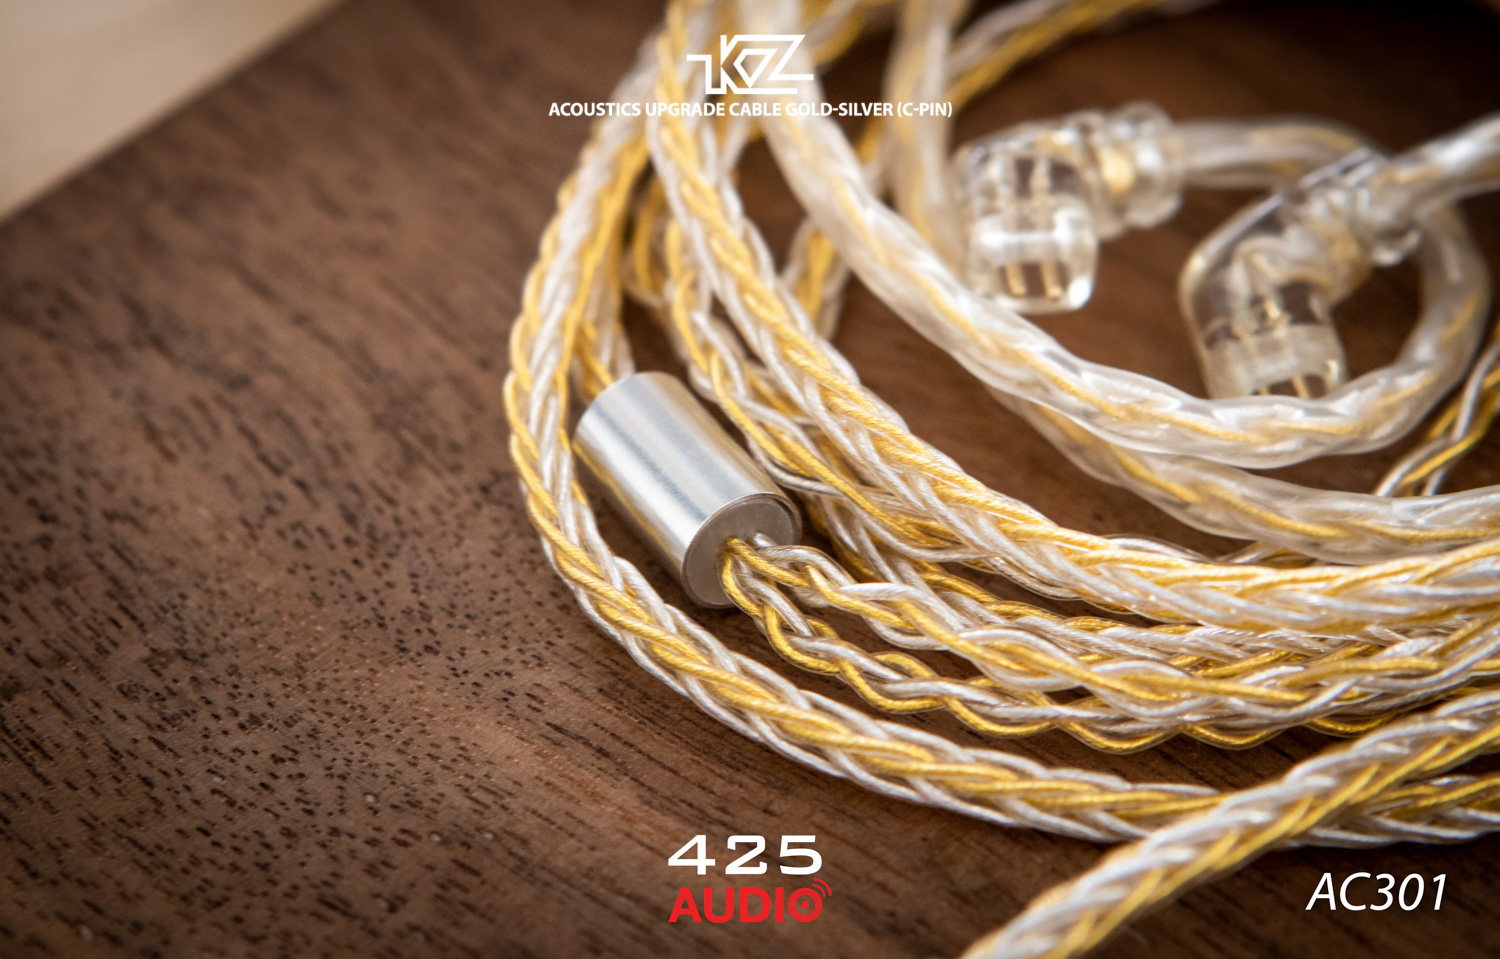 สายอัพเกรด,KZ Acoustic,สายทองแดงชุบทอง,สายทองแดงชุบเงิน,8 cores,2 Pin,C pin,3.5 มม.